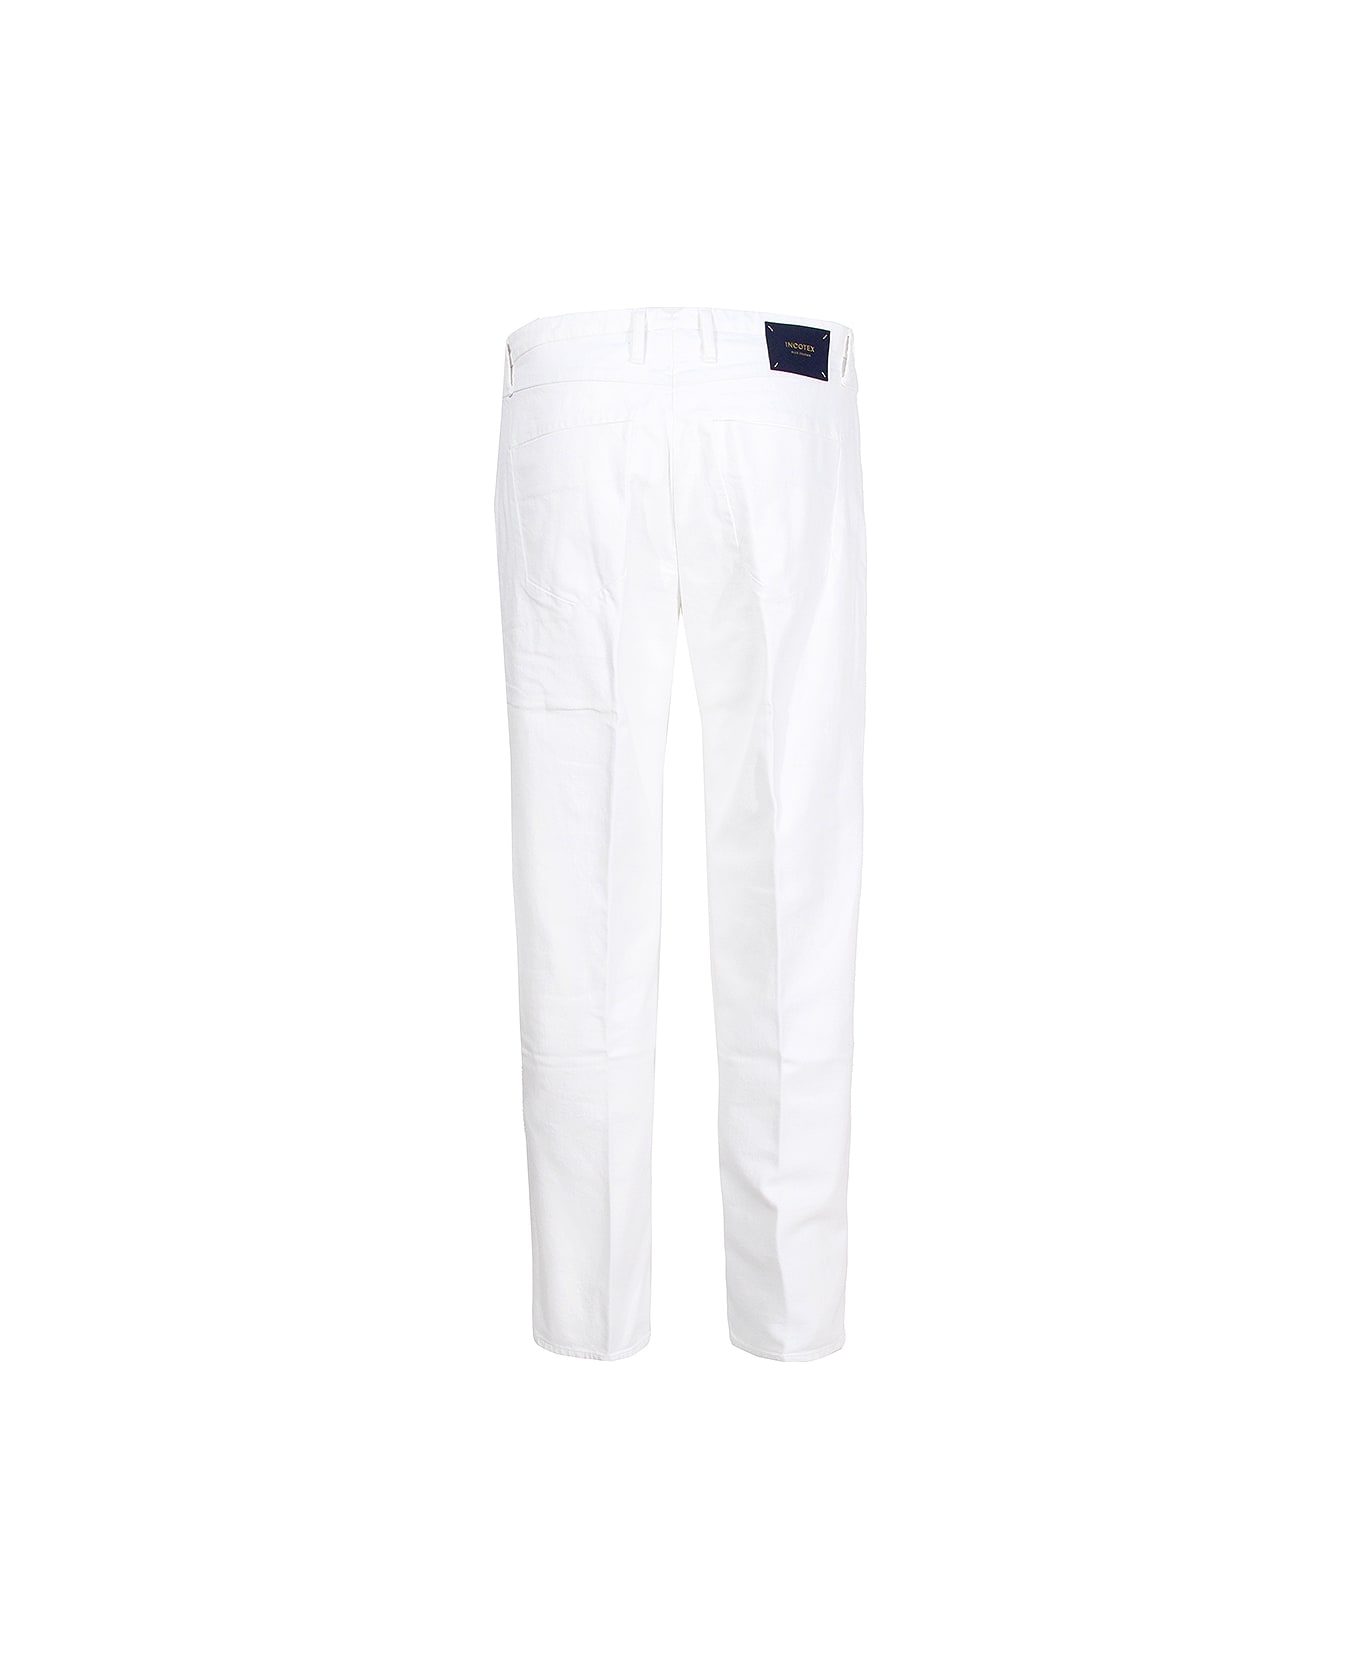 Incotex Jeans Incotex Blue Division - White ボトムス